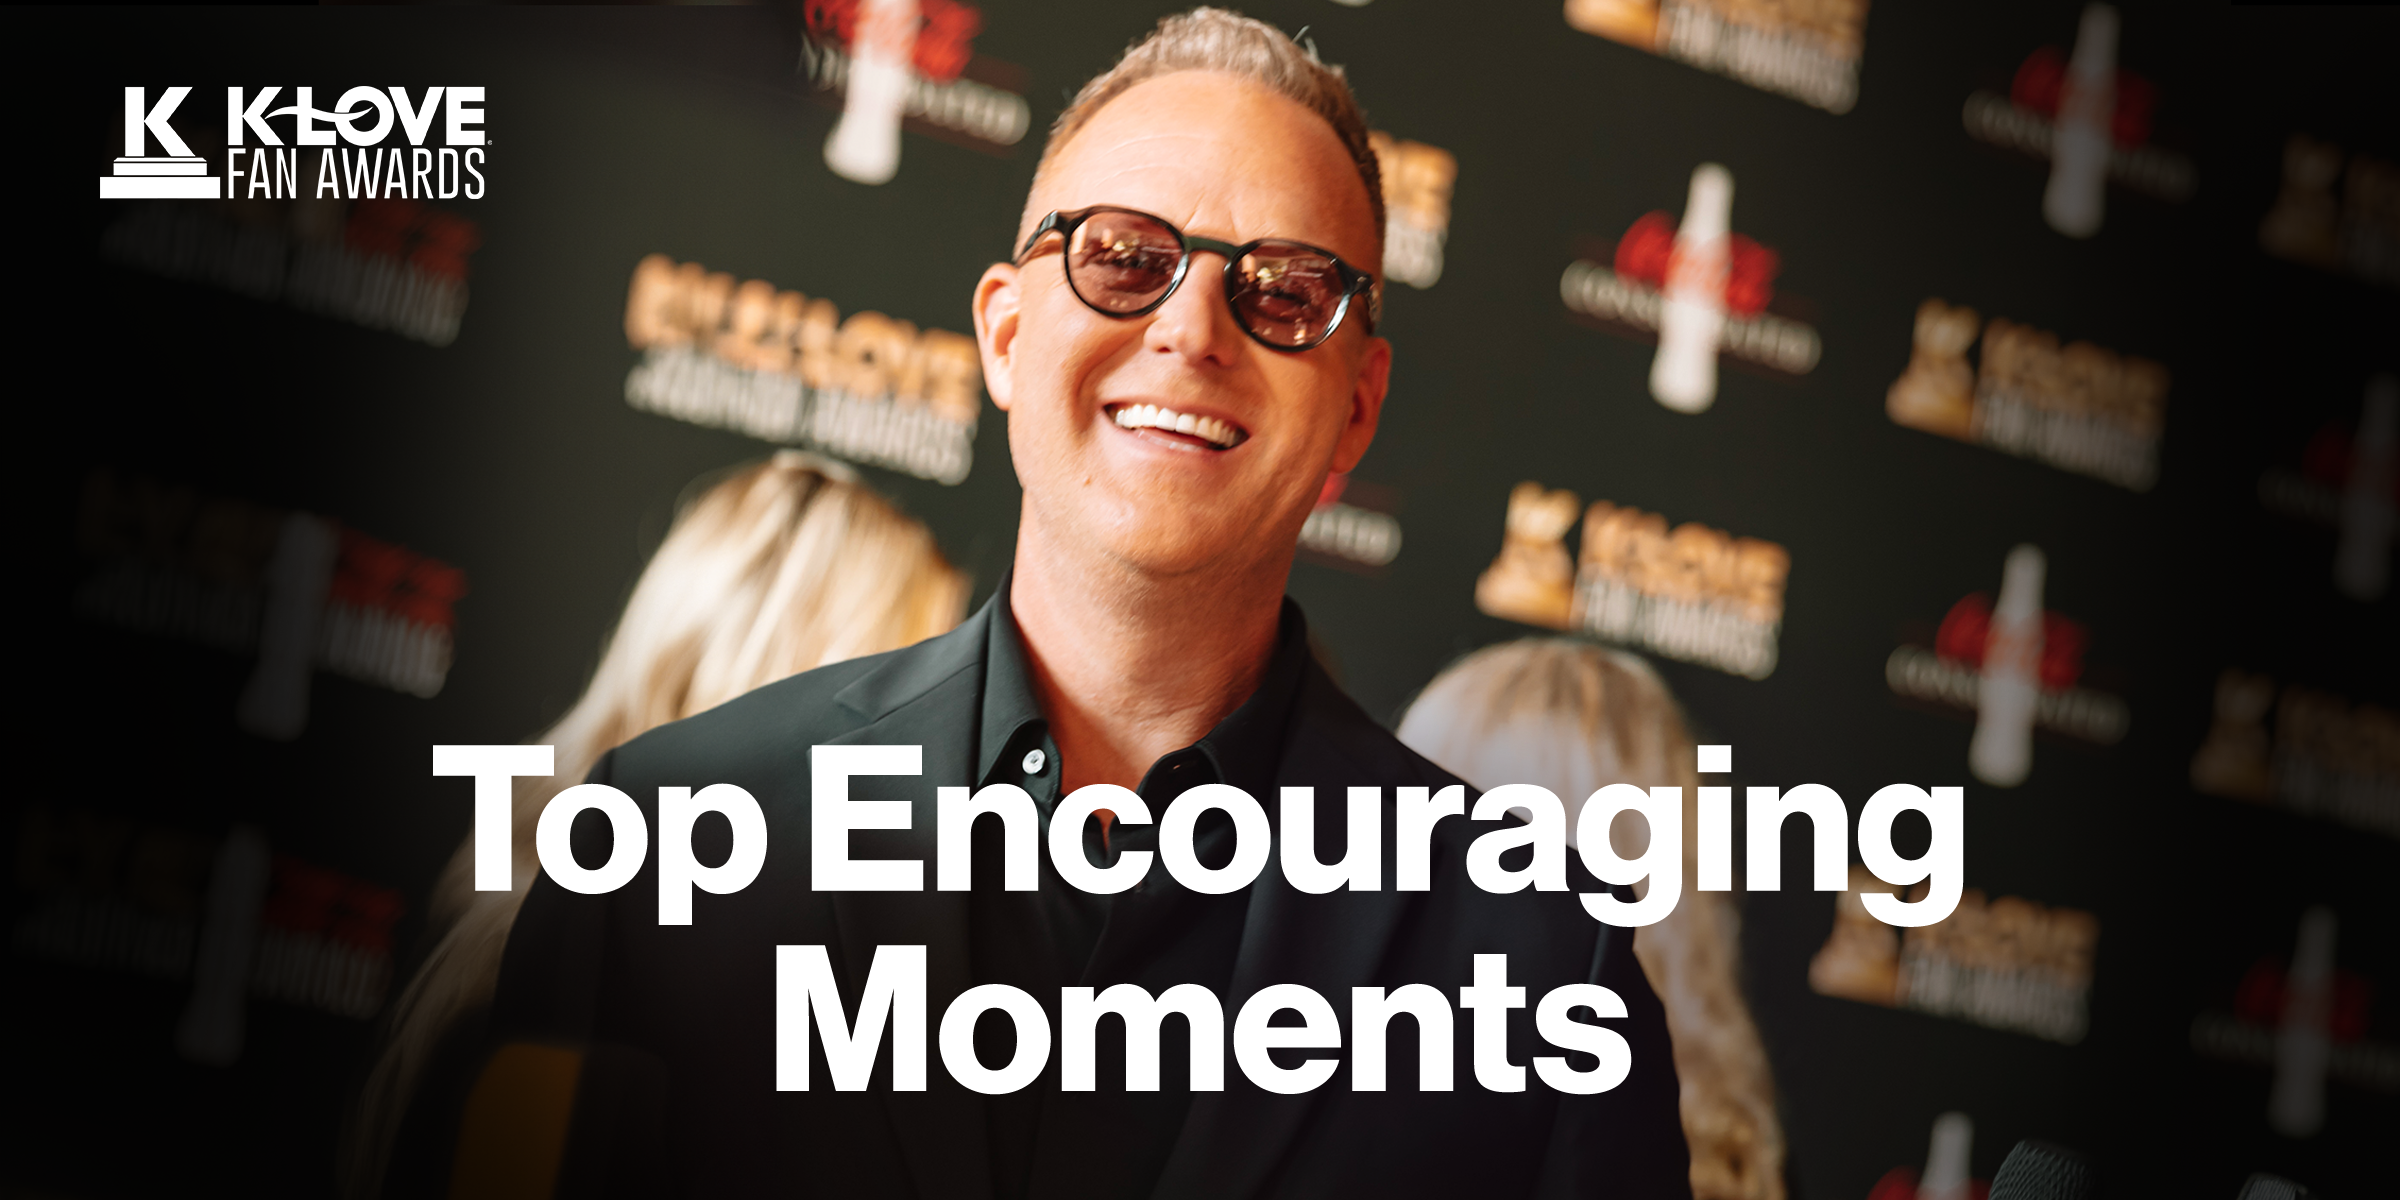 K-LOVE Fan Awards: Top Encouraging Moments